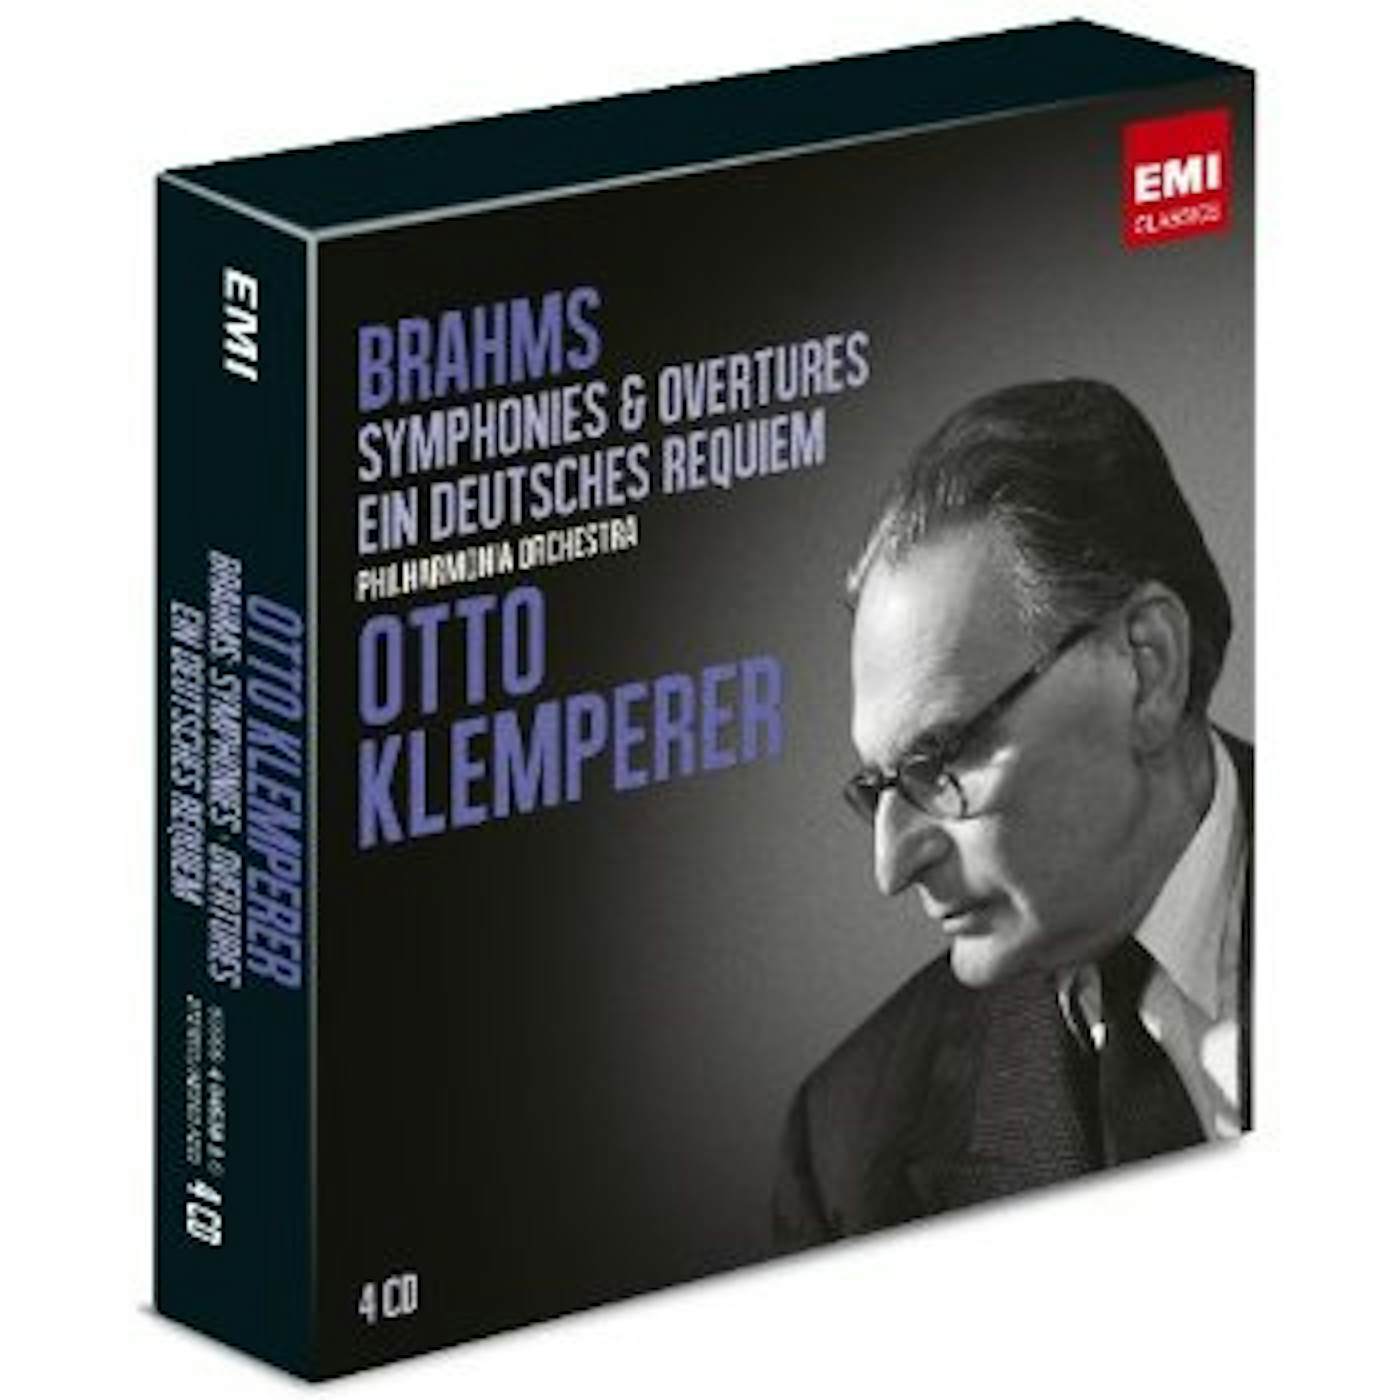 Otto Klemperer BRAHMS: SYMPHONIES EIN DEUTSCH CD